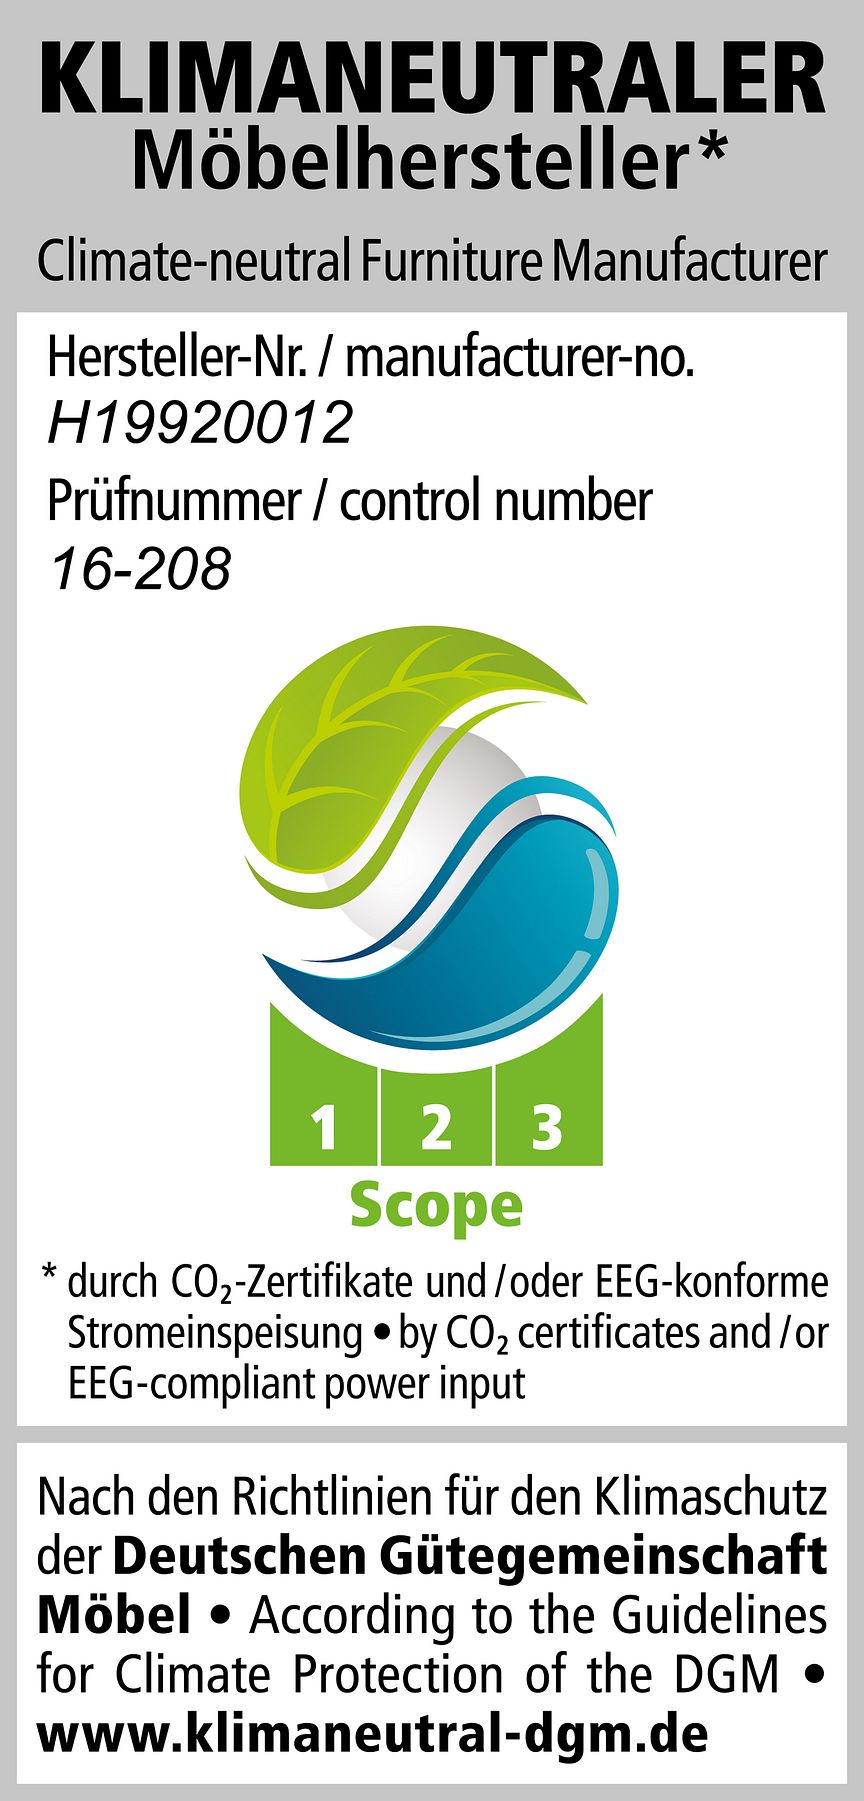 PM-2020-DGM-burgbad-Klimaneutraler-Hersteller.jpg